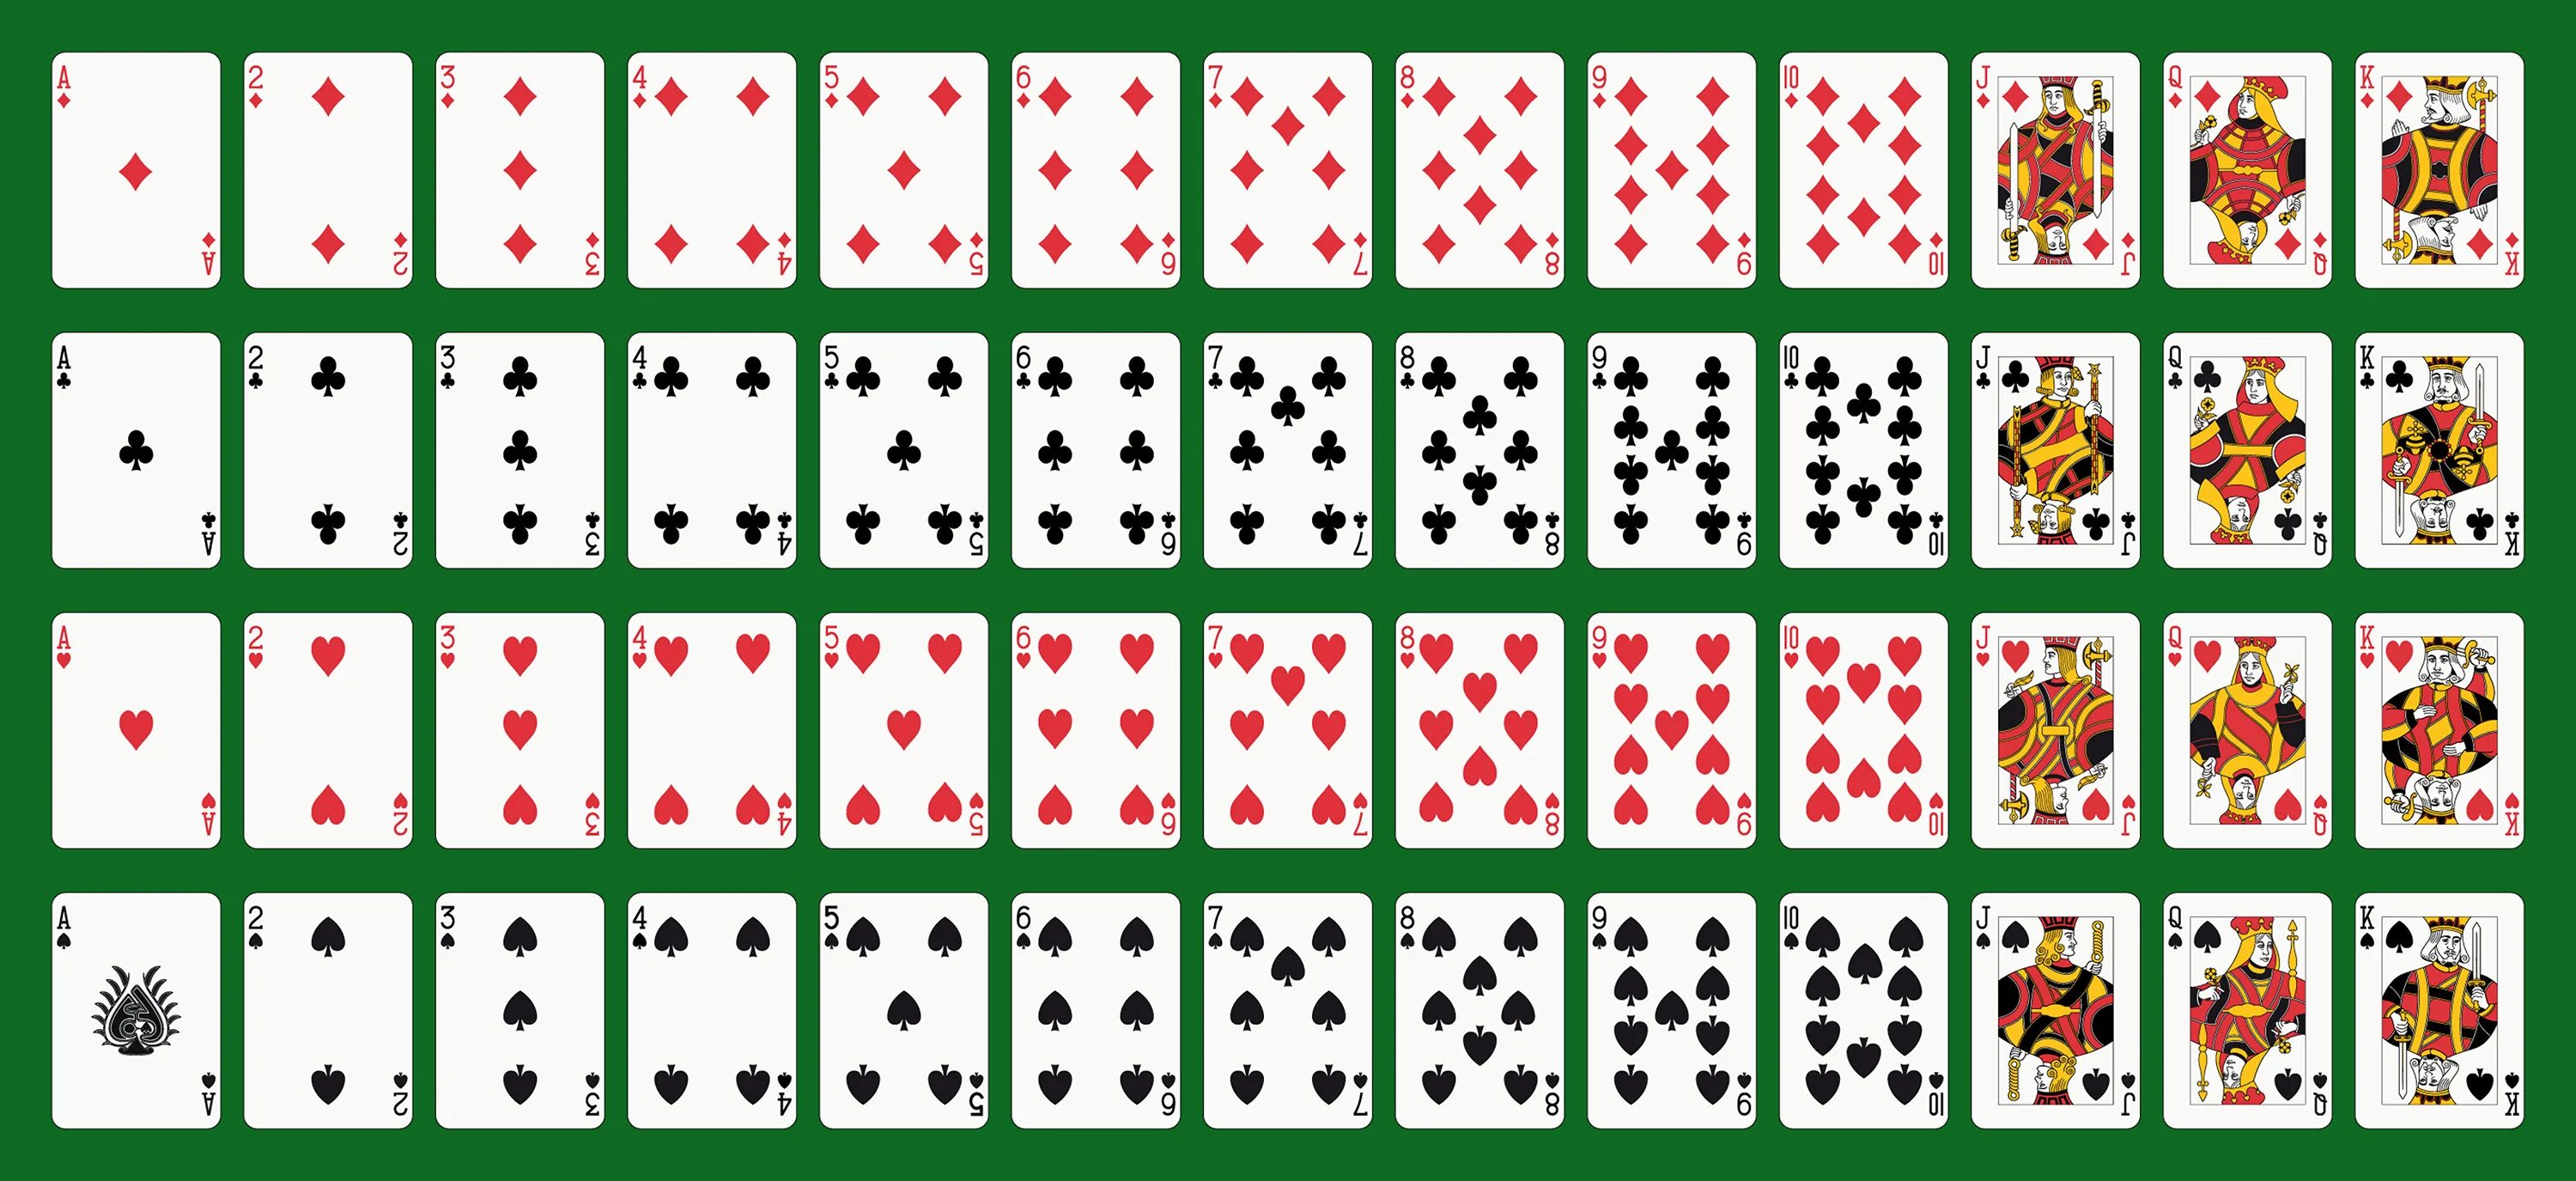 Полный набор карт. Покер колода 52 карты. Колода в 52 карты в холдеме. Standard 52-Card Deck. Распечатка карт игральных.